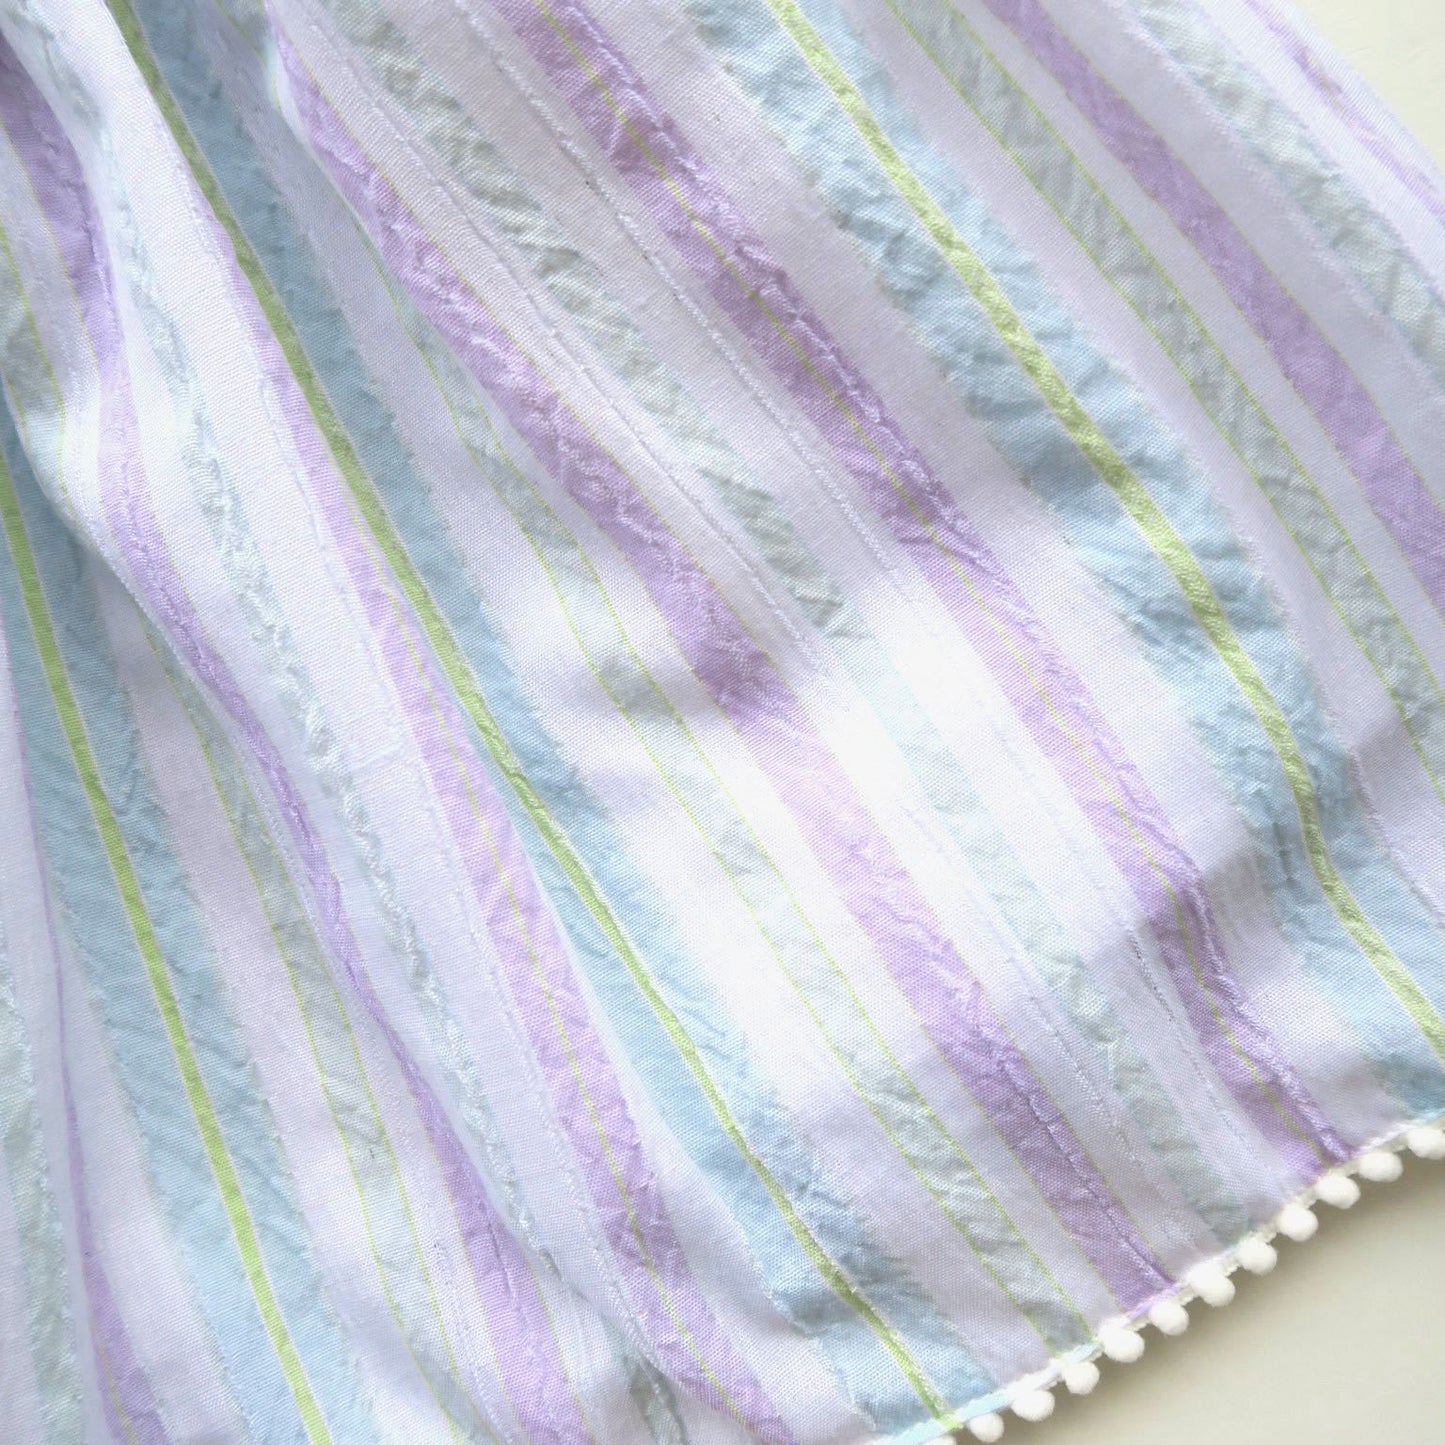 Periwinkle Dress in Purple Mint Stripes - Lil' Tati